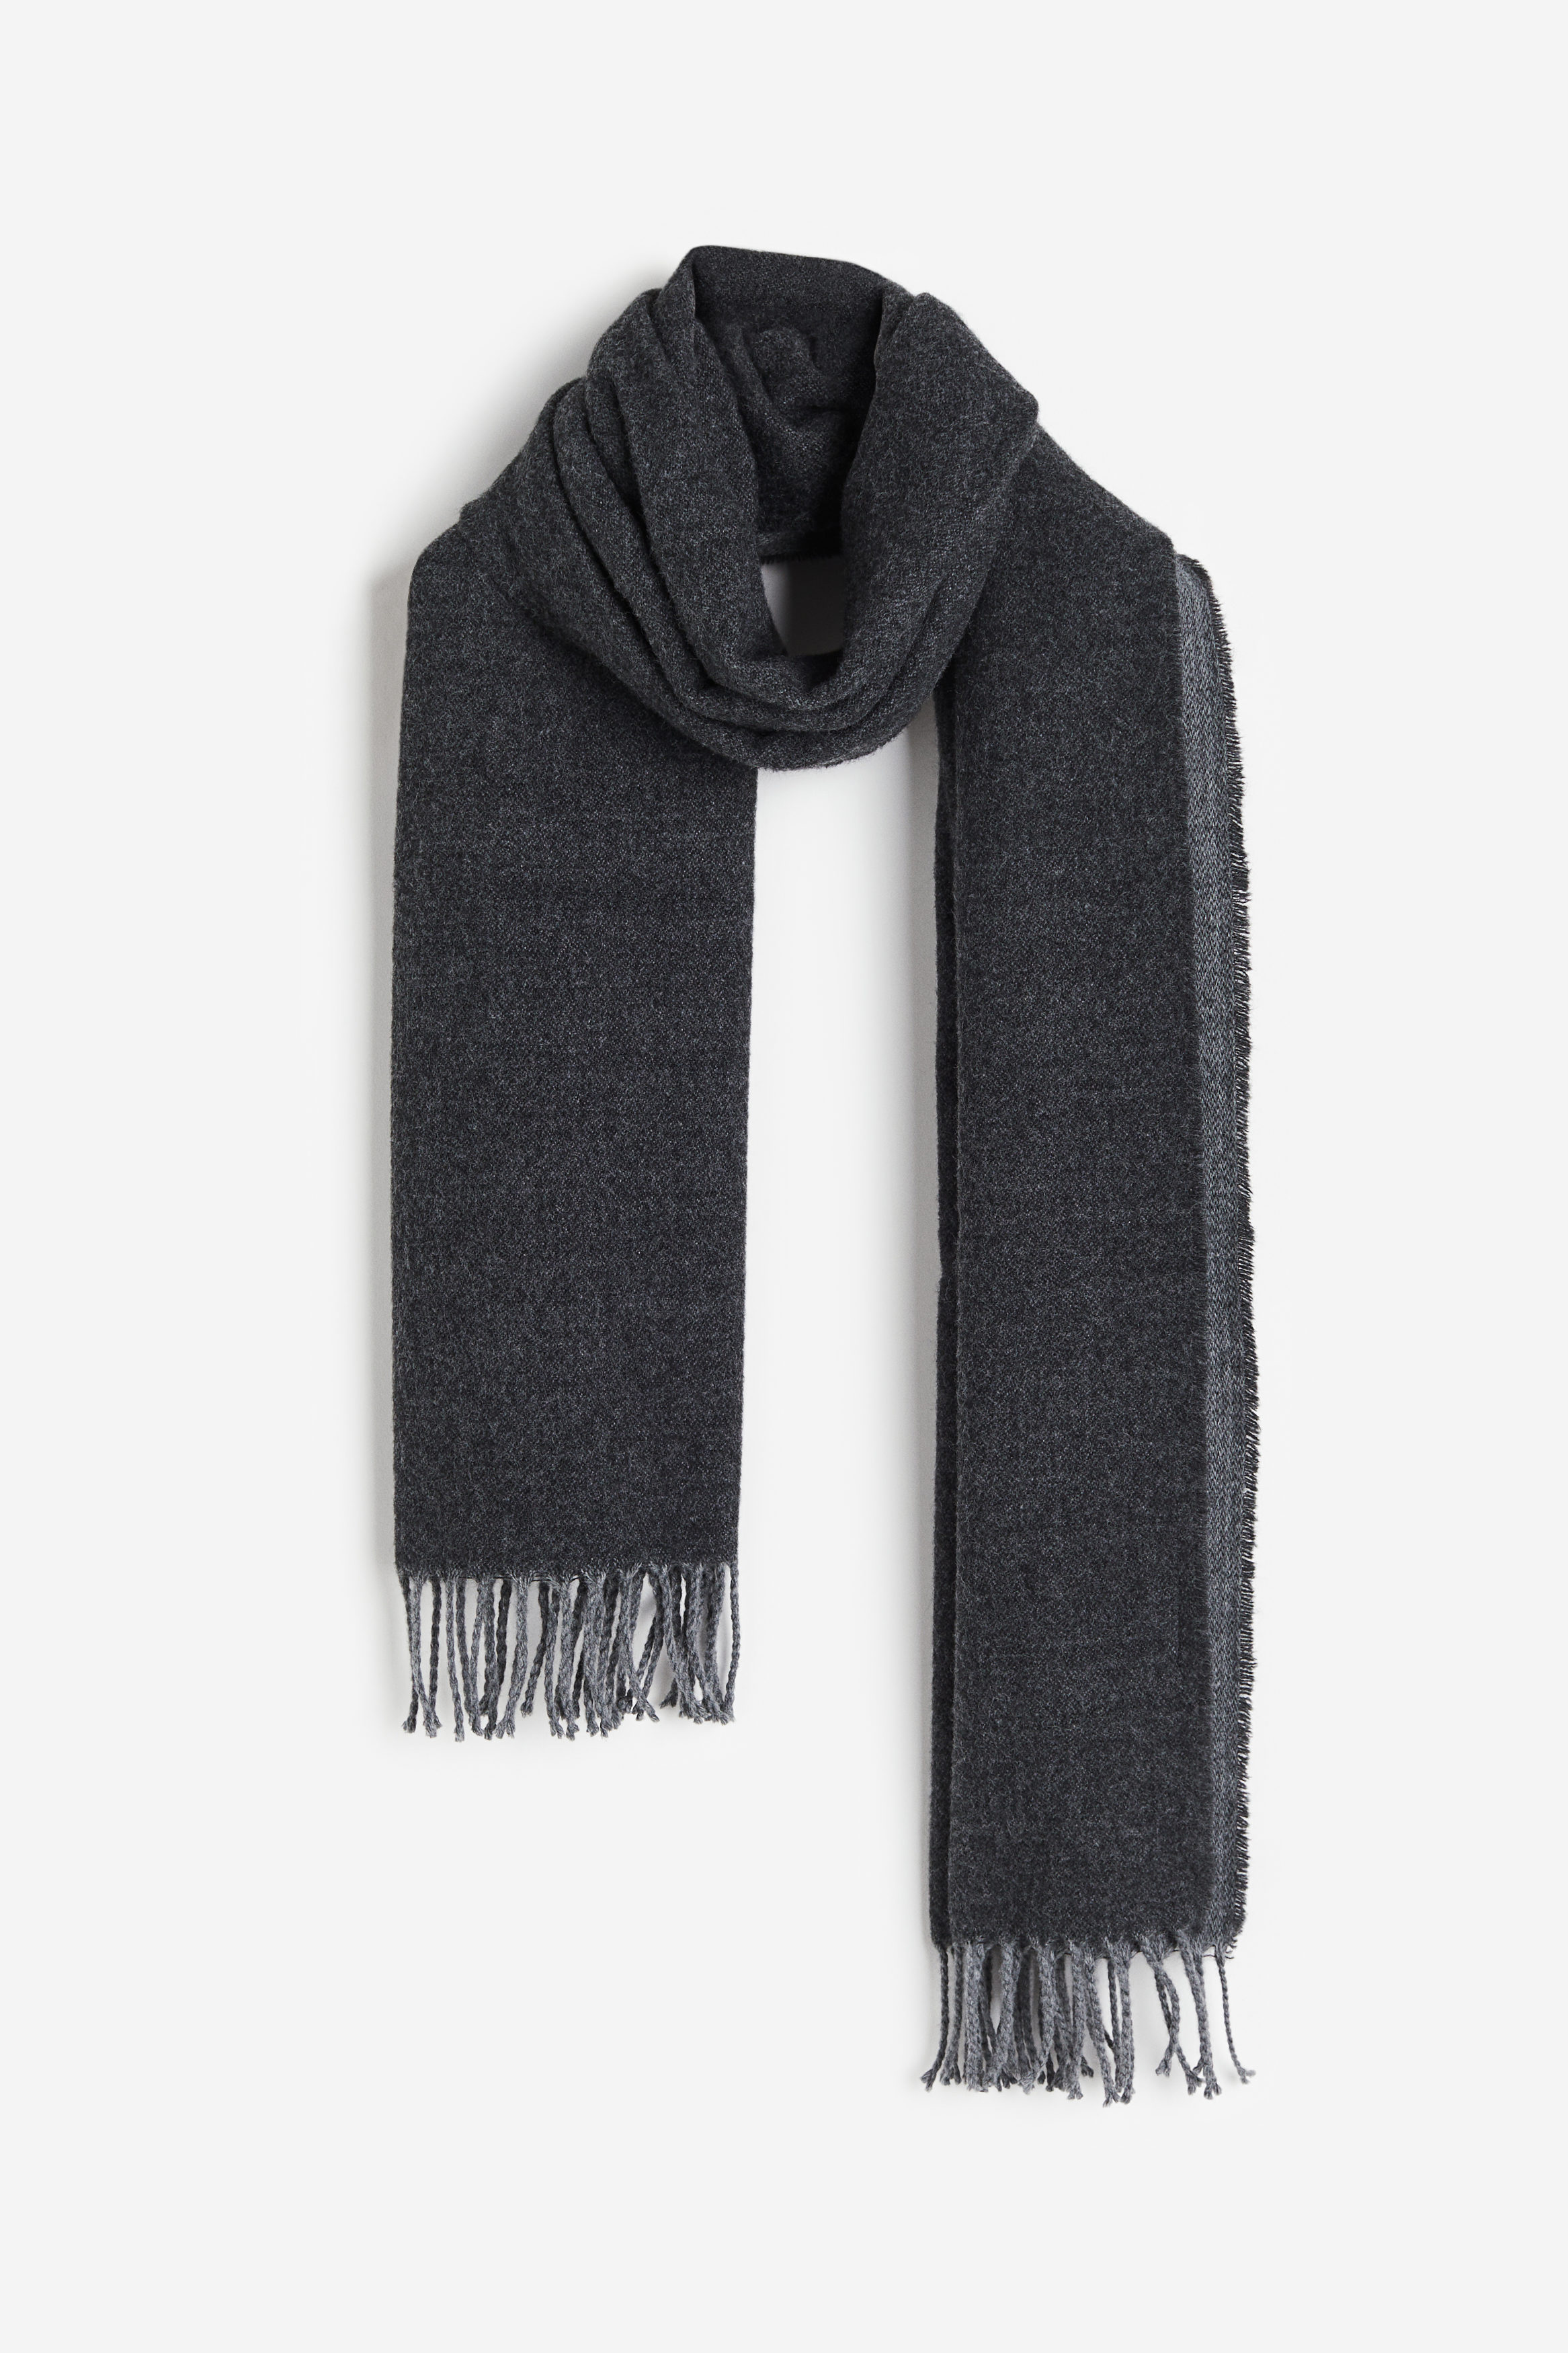 Billede af H&M Halstørklæde Mørkegrå, Halstørklæder. Farve: Dark grey I størrelse Onesize